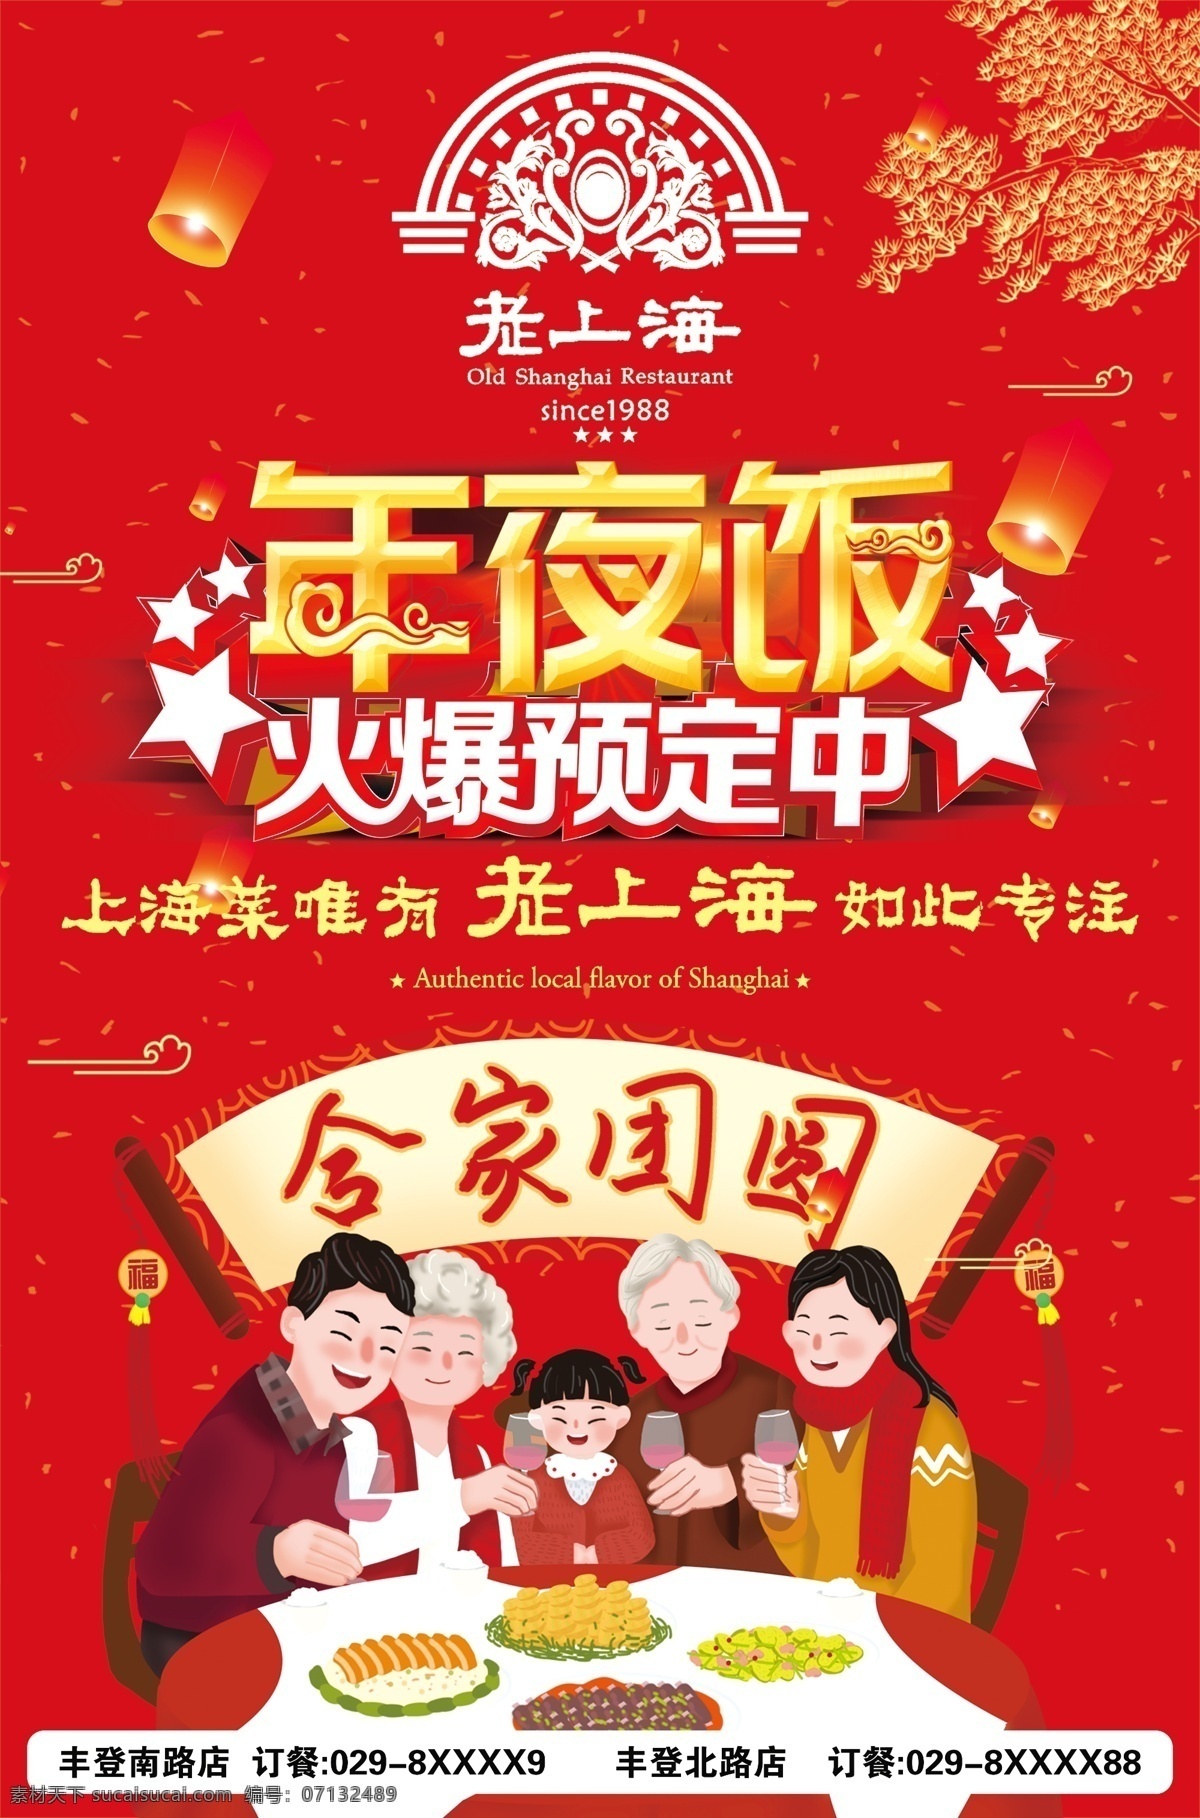 老 上海 年夜饭 预定 中 年夜饭预定中 老上海菜馆 2020 红色背景 阖家欢乐 海报类 招贴设计